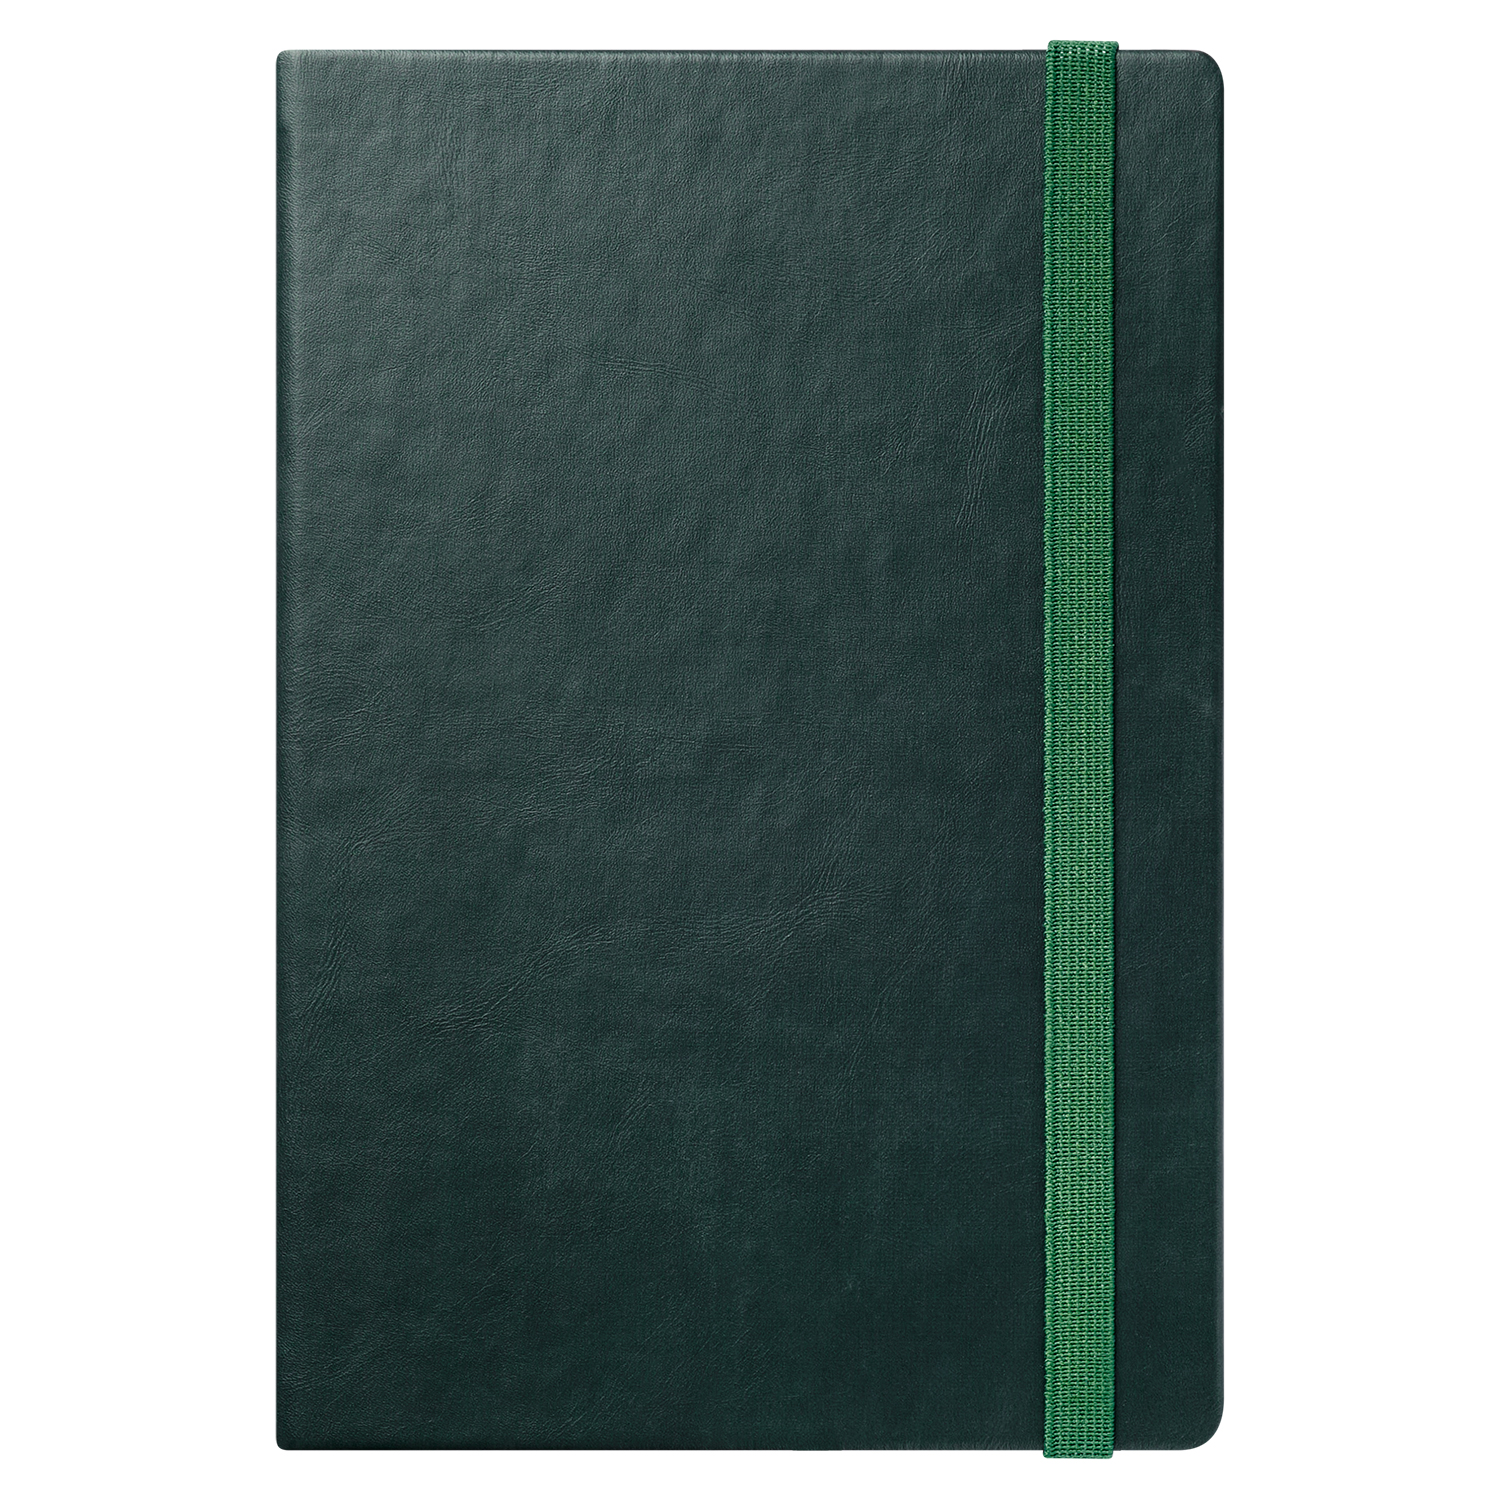 Ежедневник Portland Btobook недатированный, зеленый (без упаковки, без стикера)